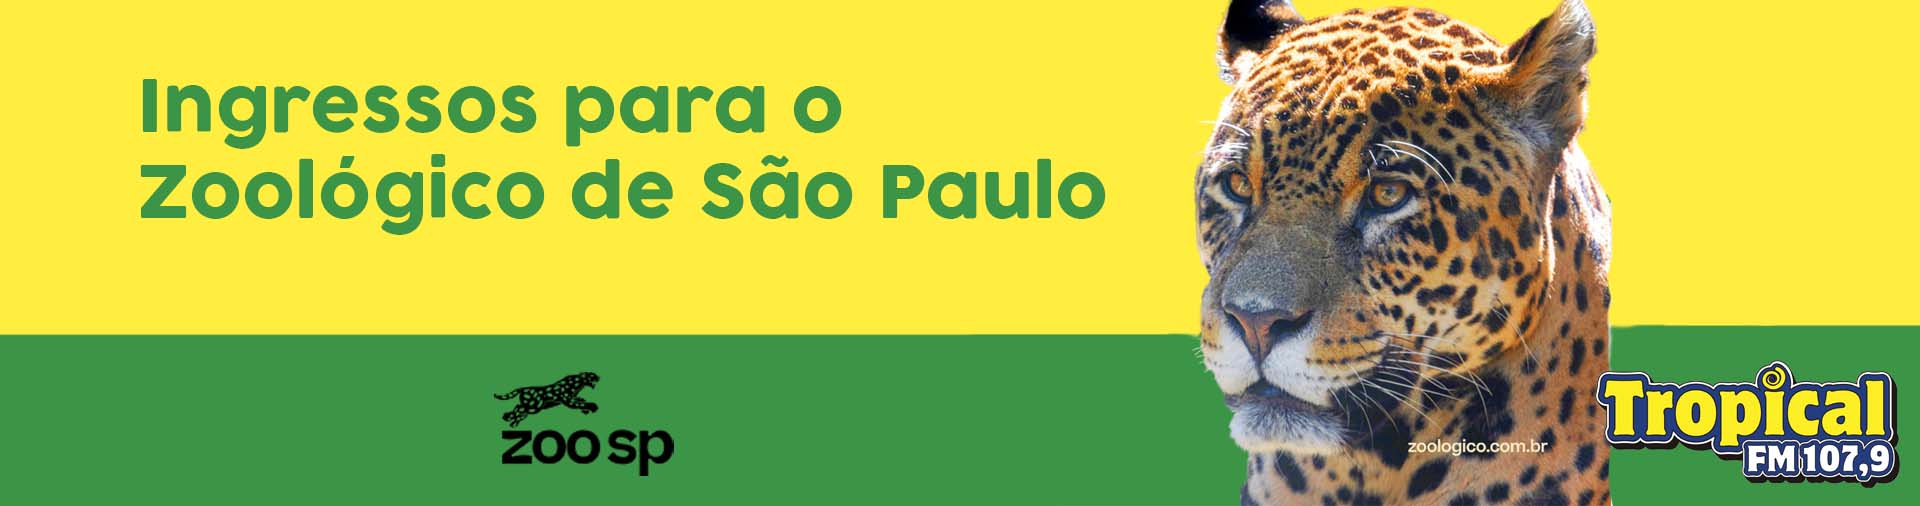 Banner Ingressos para o Zooógico de São Paulo